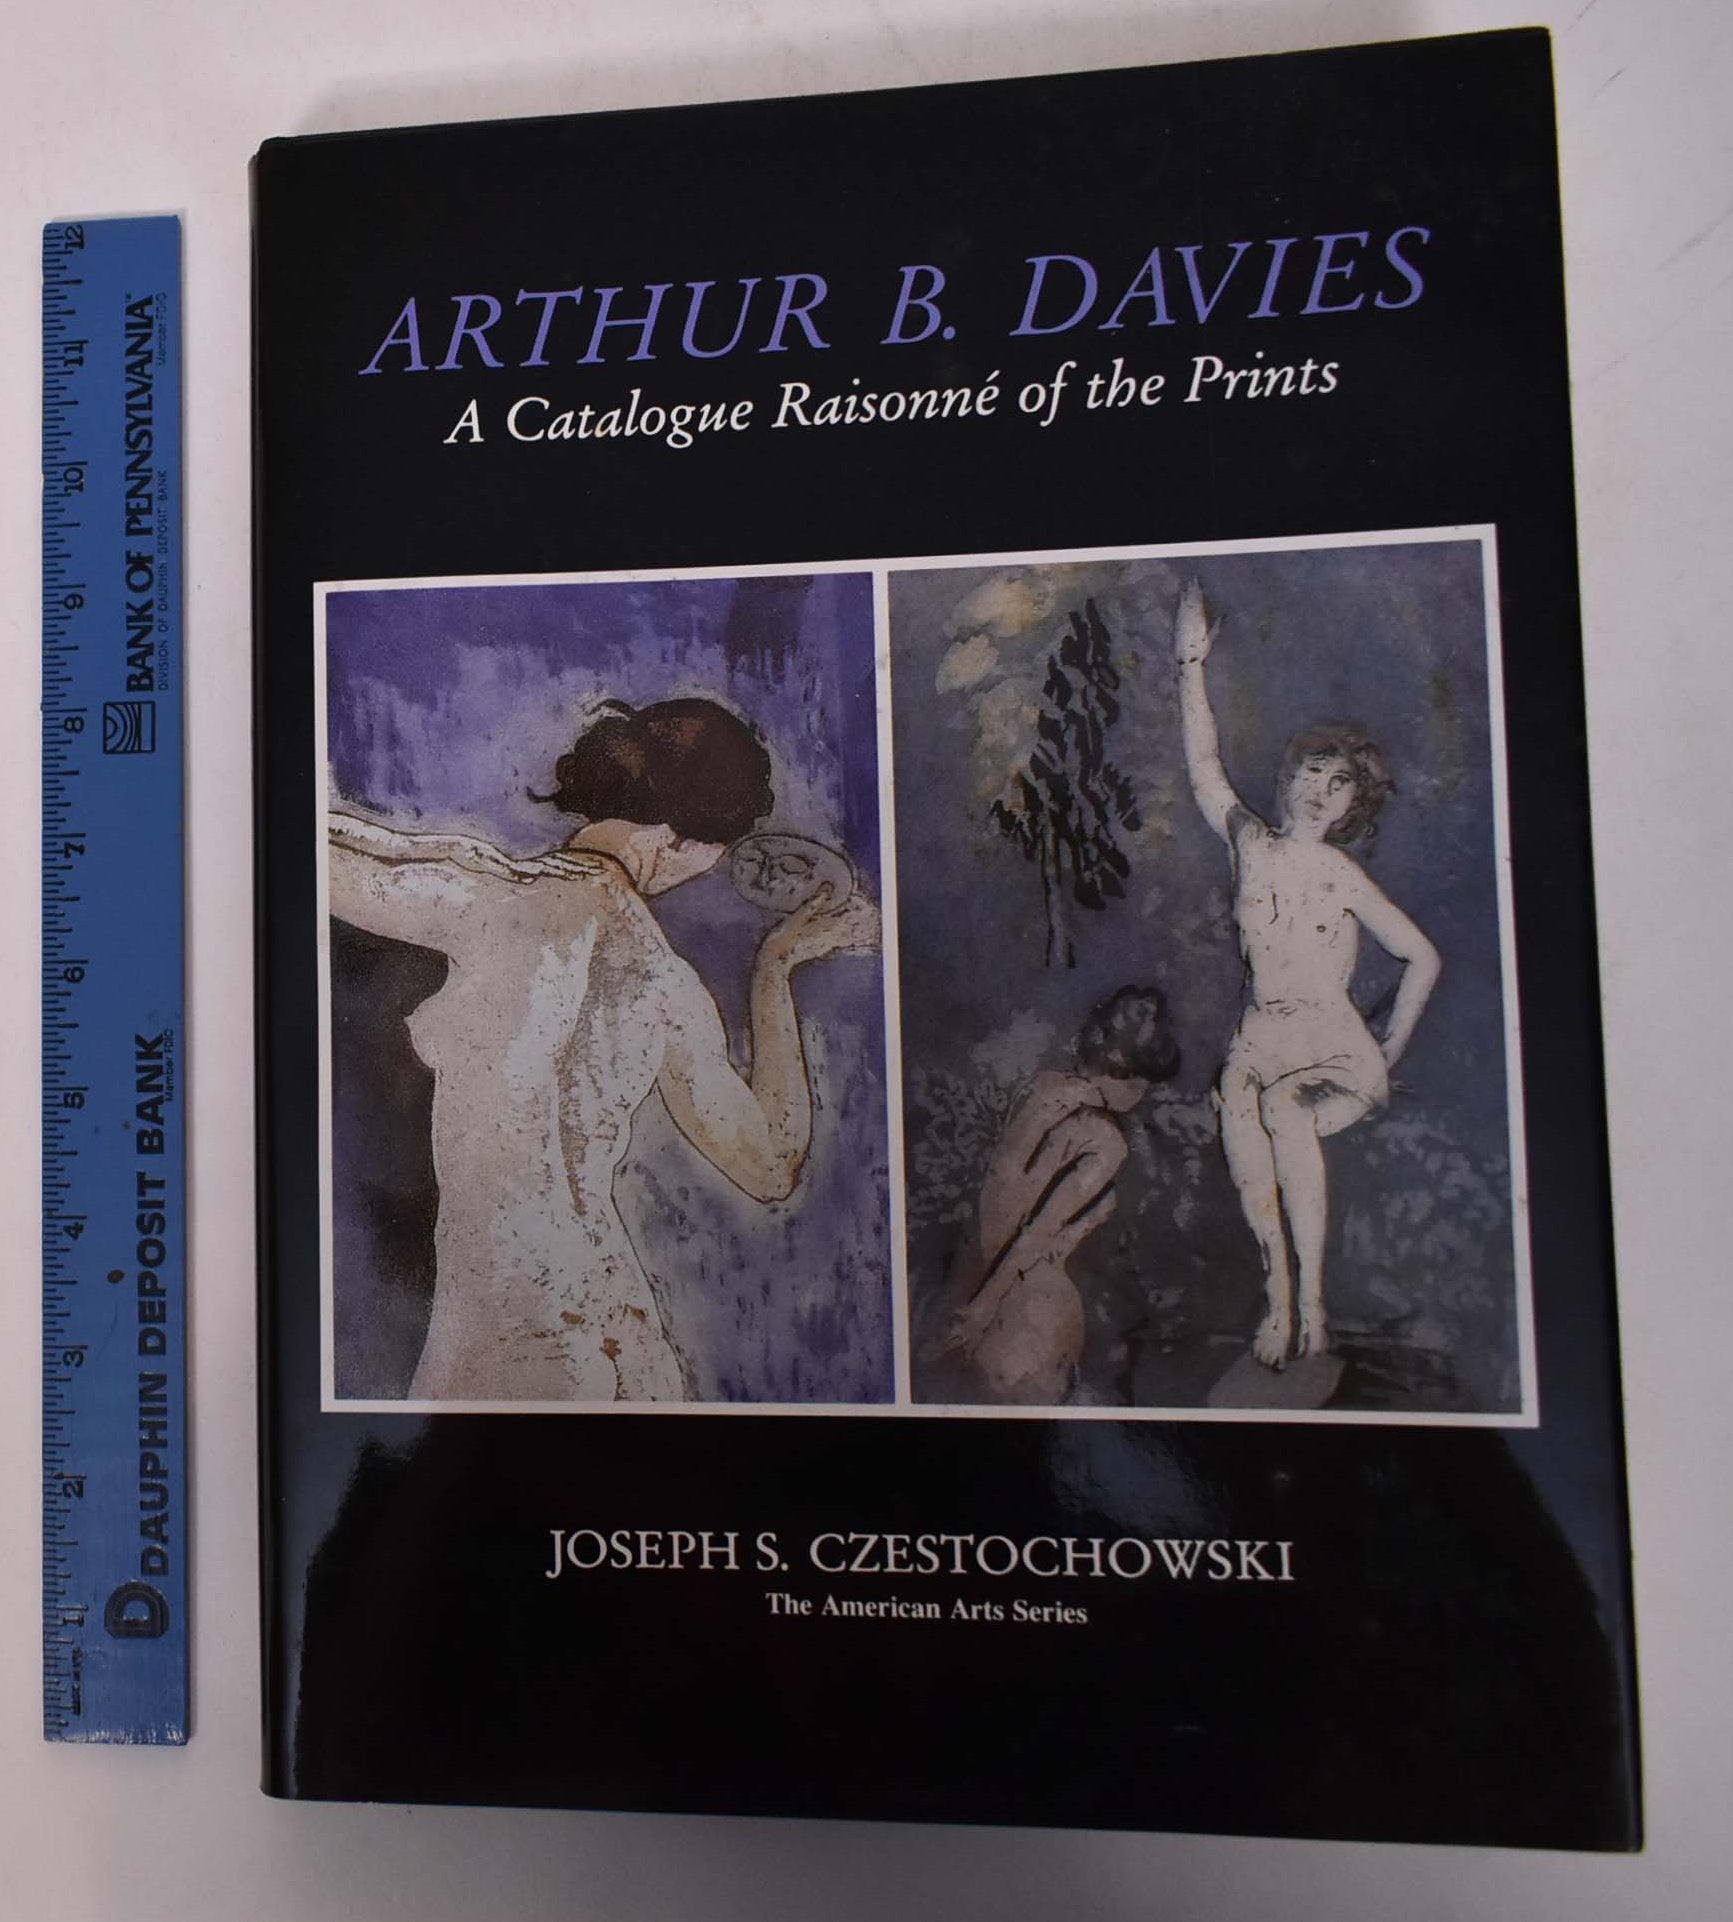 Czestochowski, Joseph S. - Arthur B. Davies: A Catalogue Raisonne of the Prints